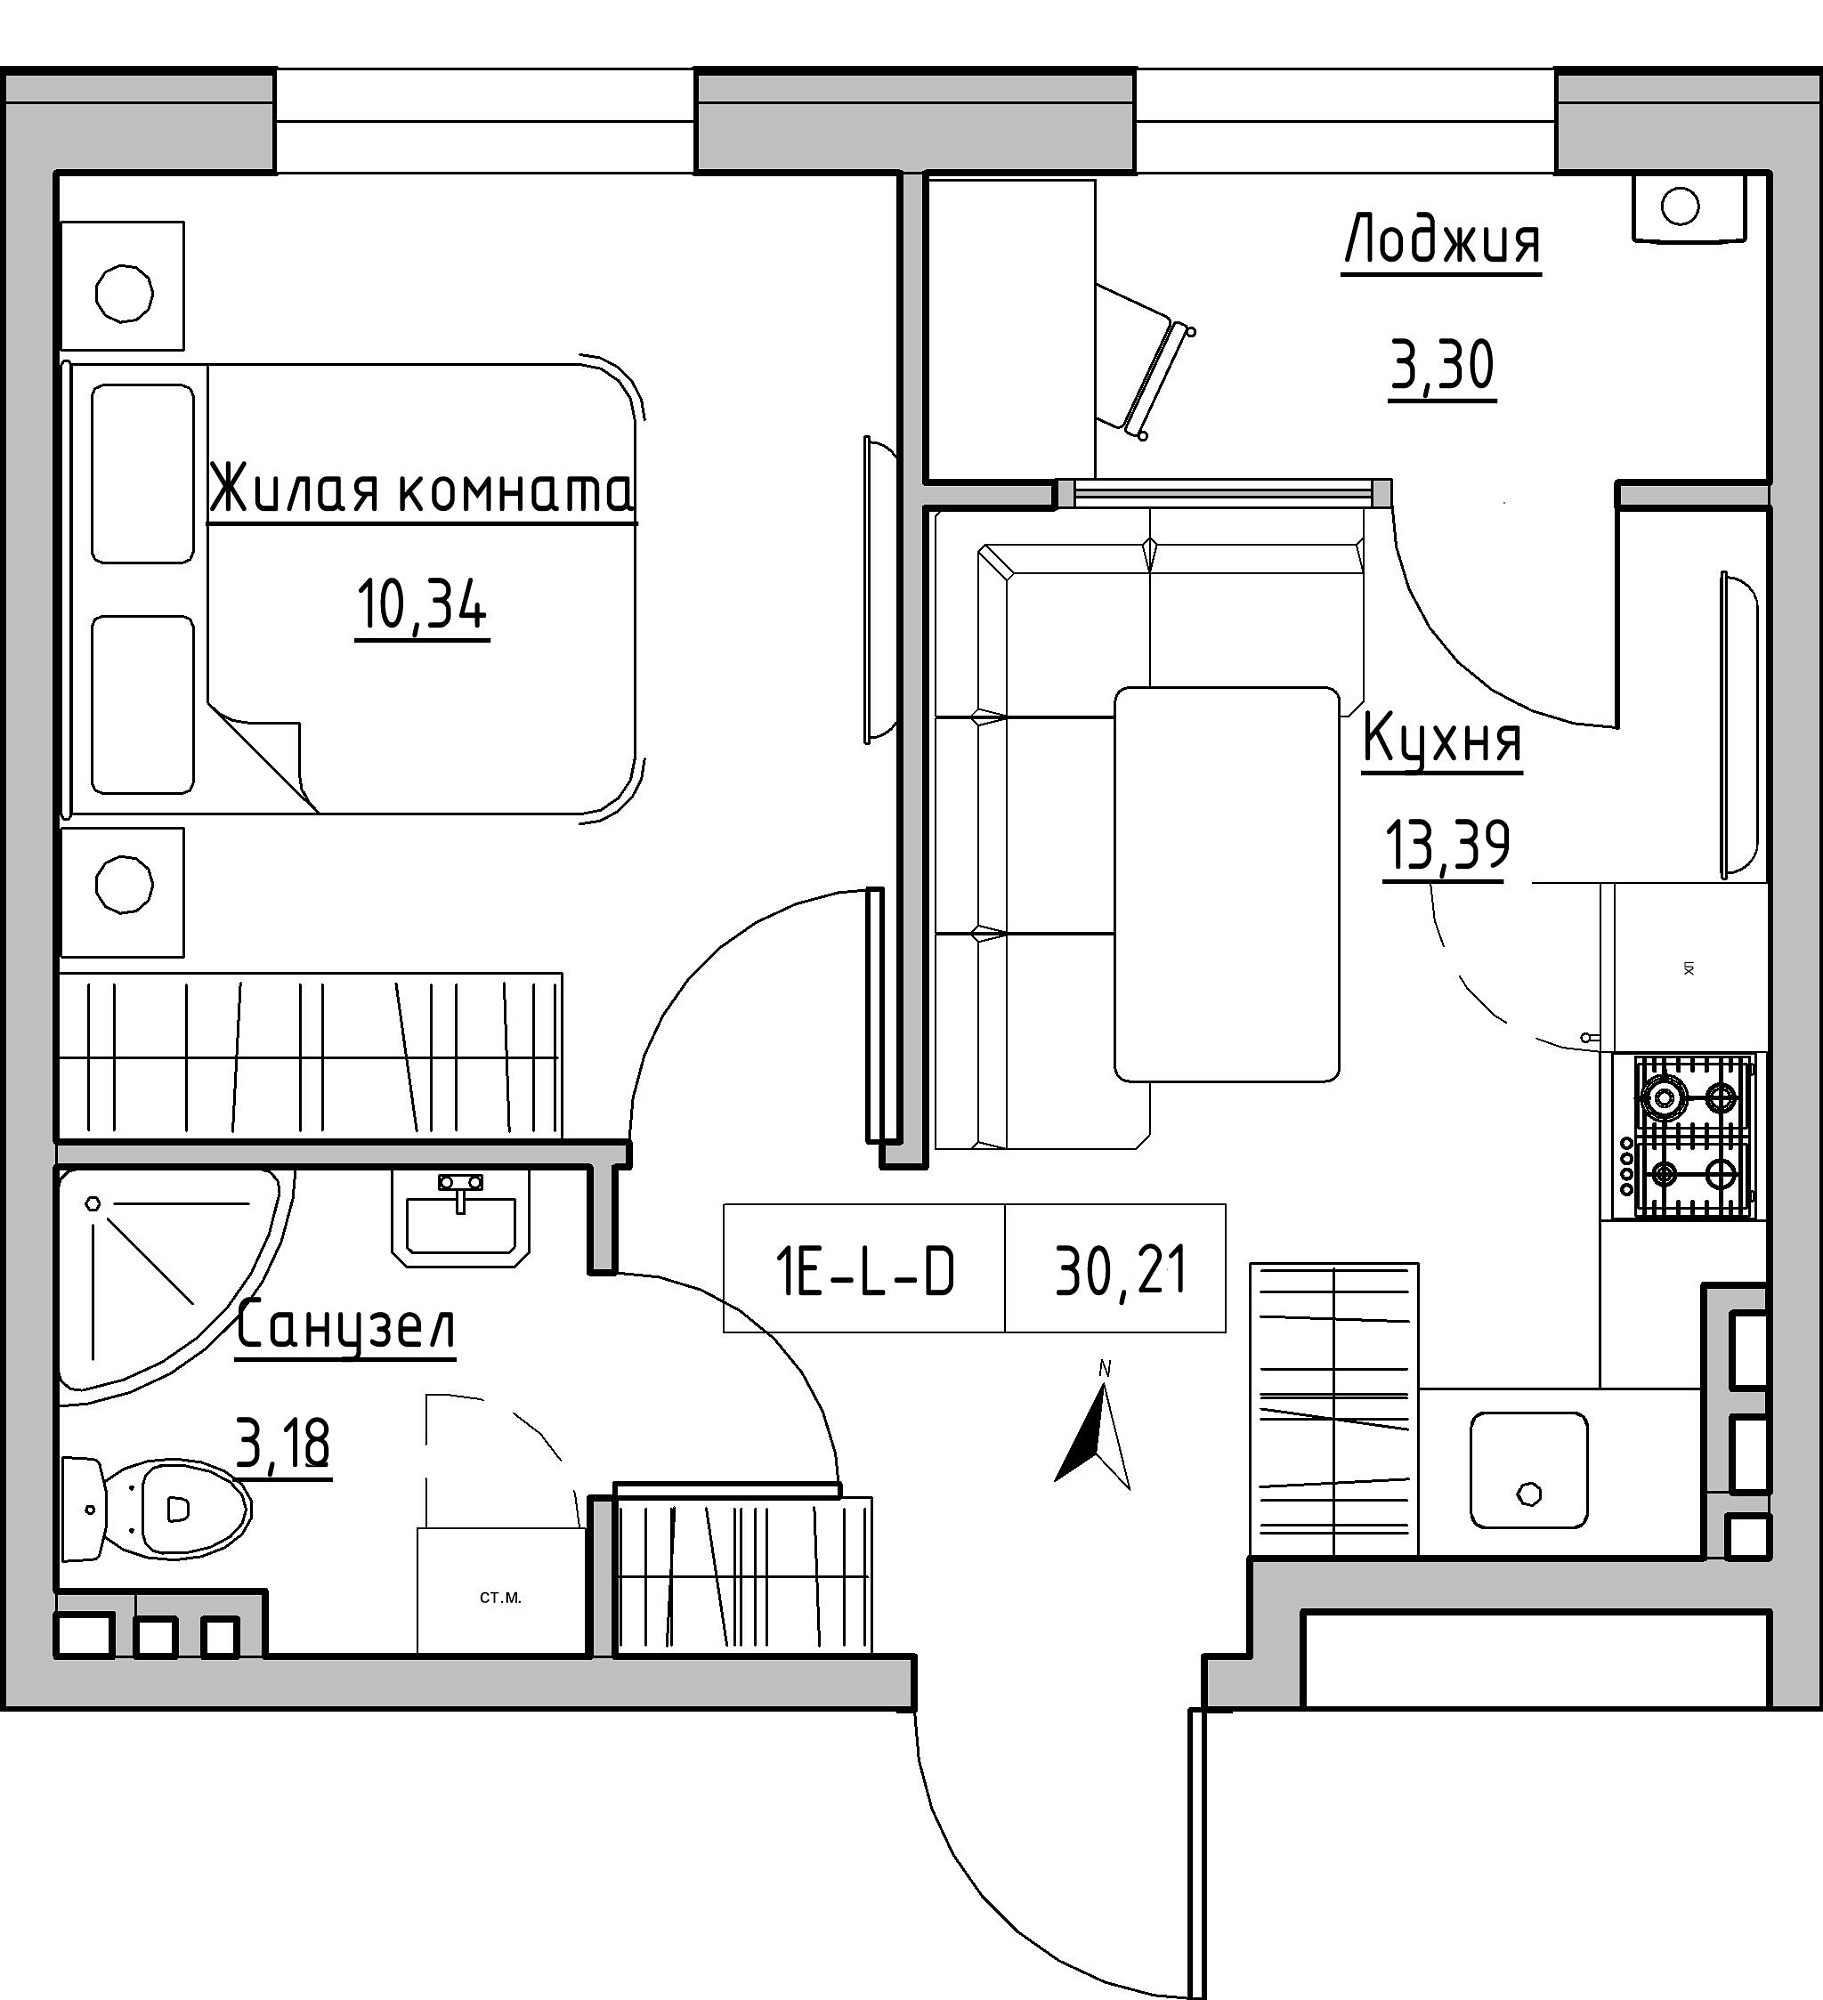 Планировка 1-к квартира площей 30.21м2, KS-024-01/0001.